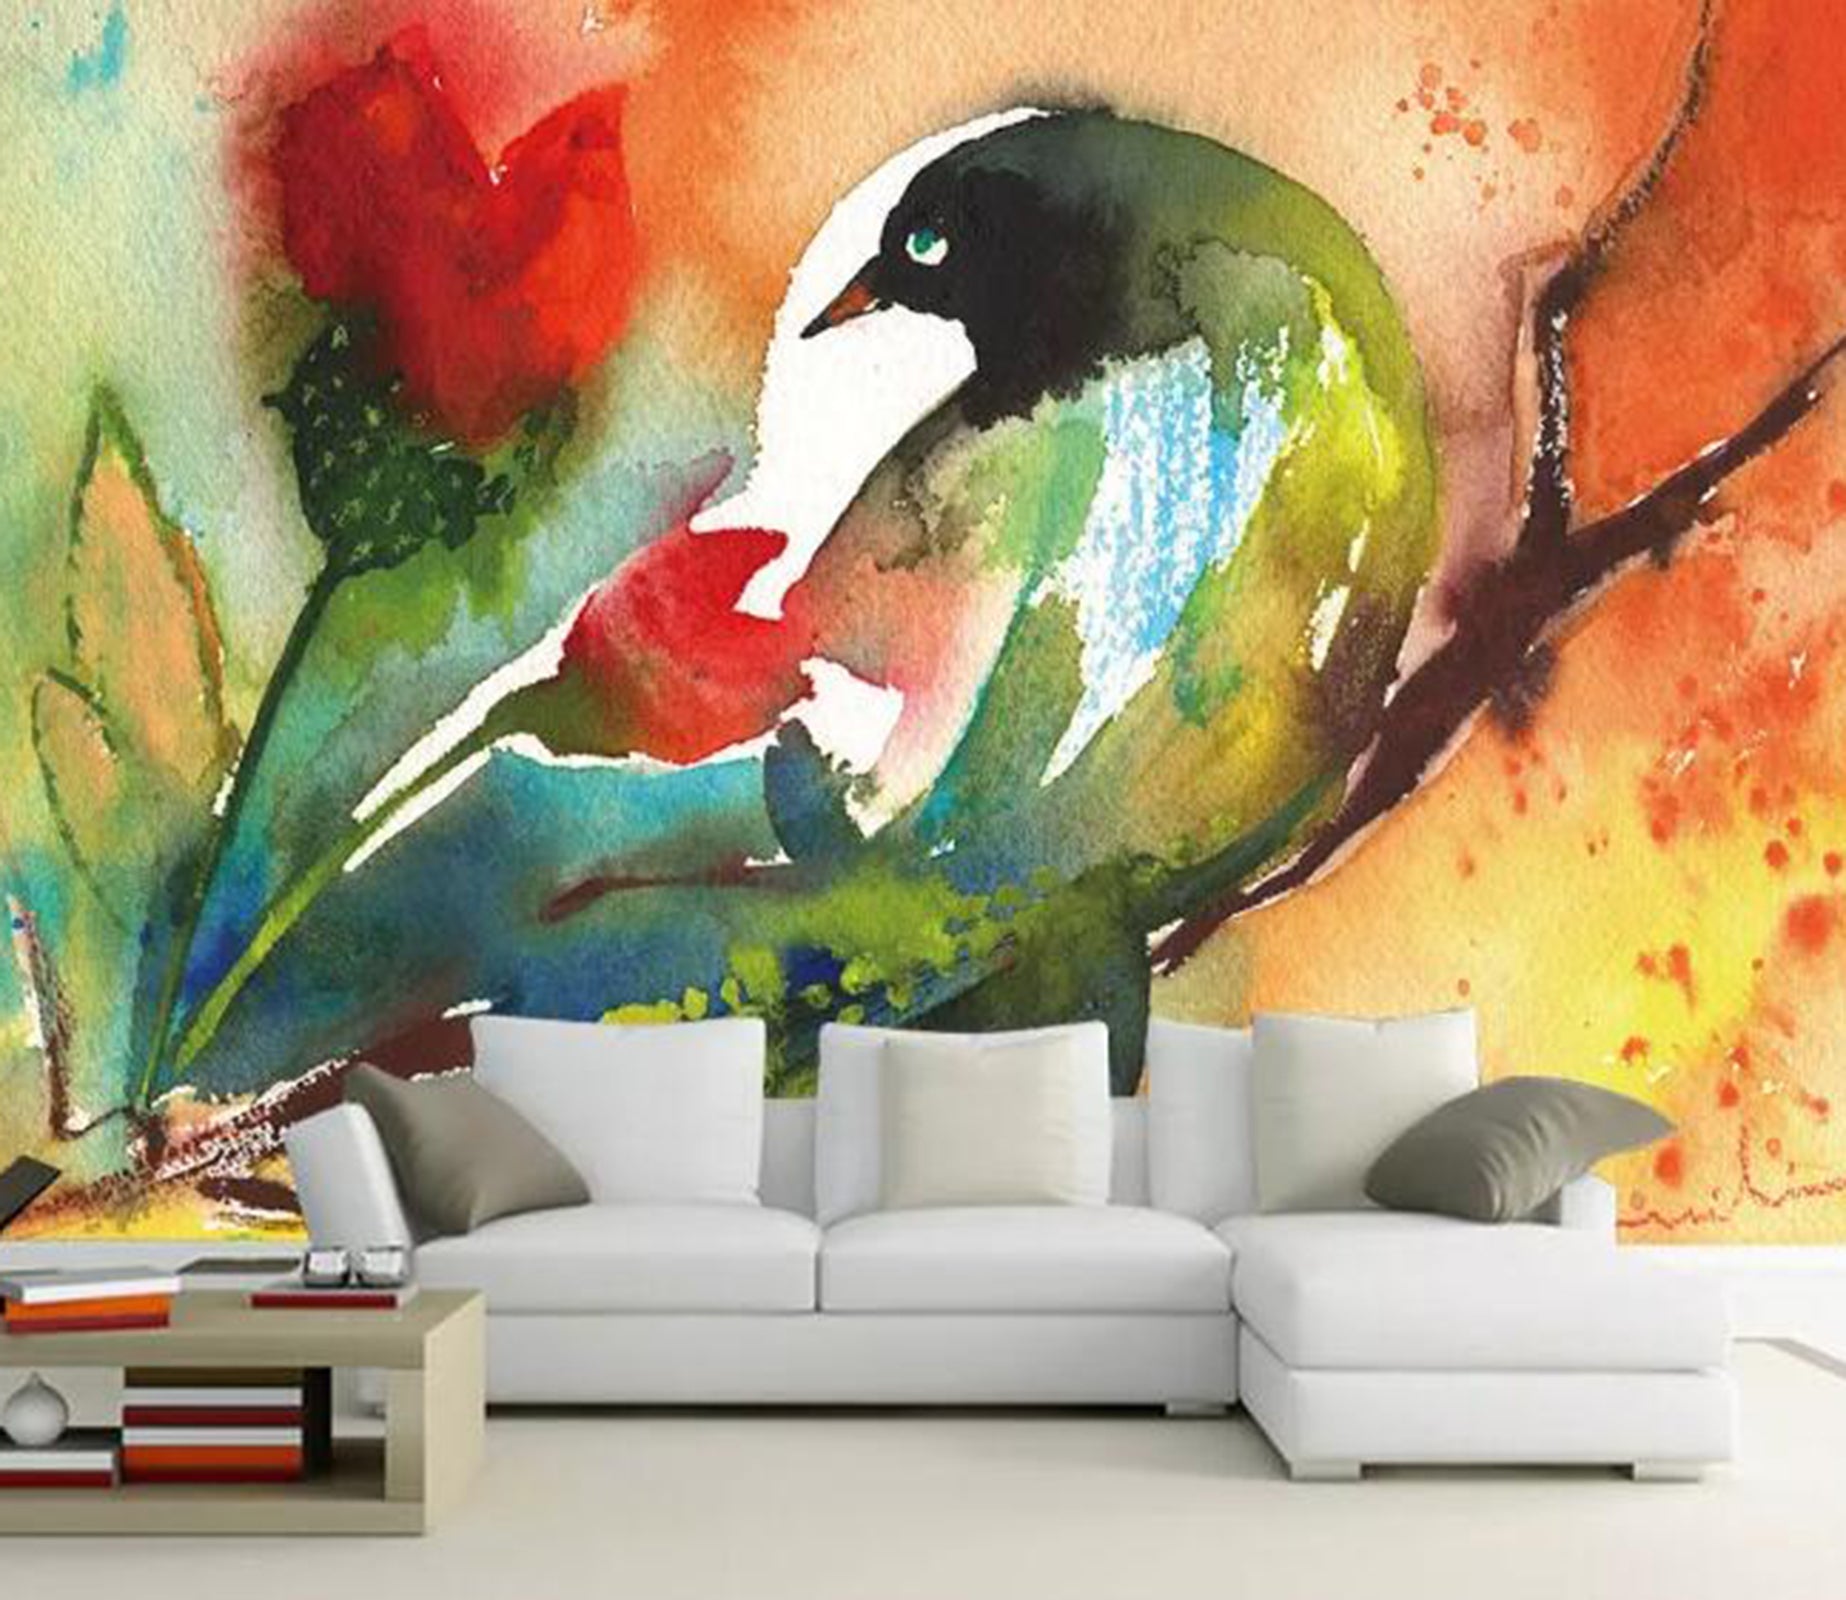 3D Color Bird WG96 Wall Murals Wallpaper AJ Wallpaper 2 